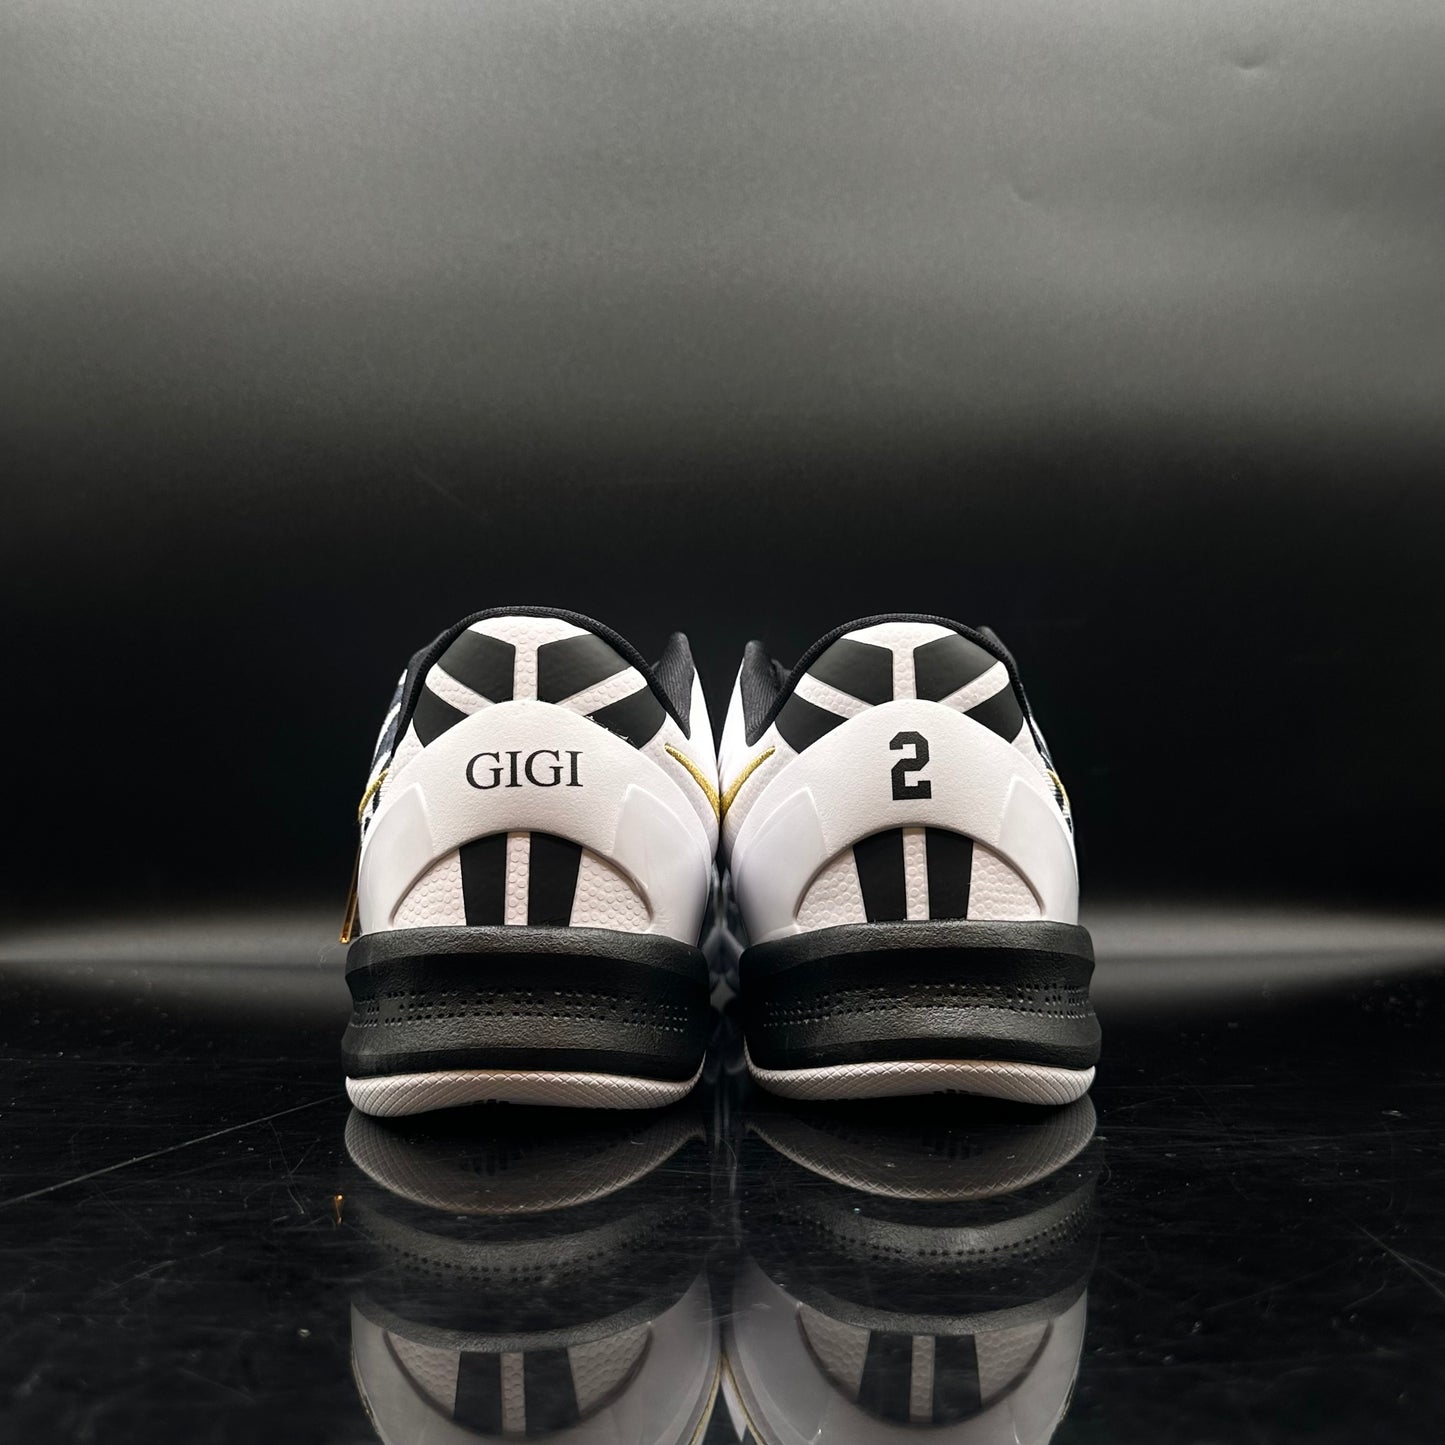 Nike Kobe 8 Mambacita Gigi SZ 5Y (DS)